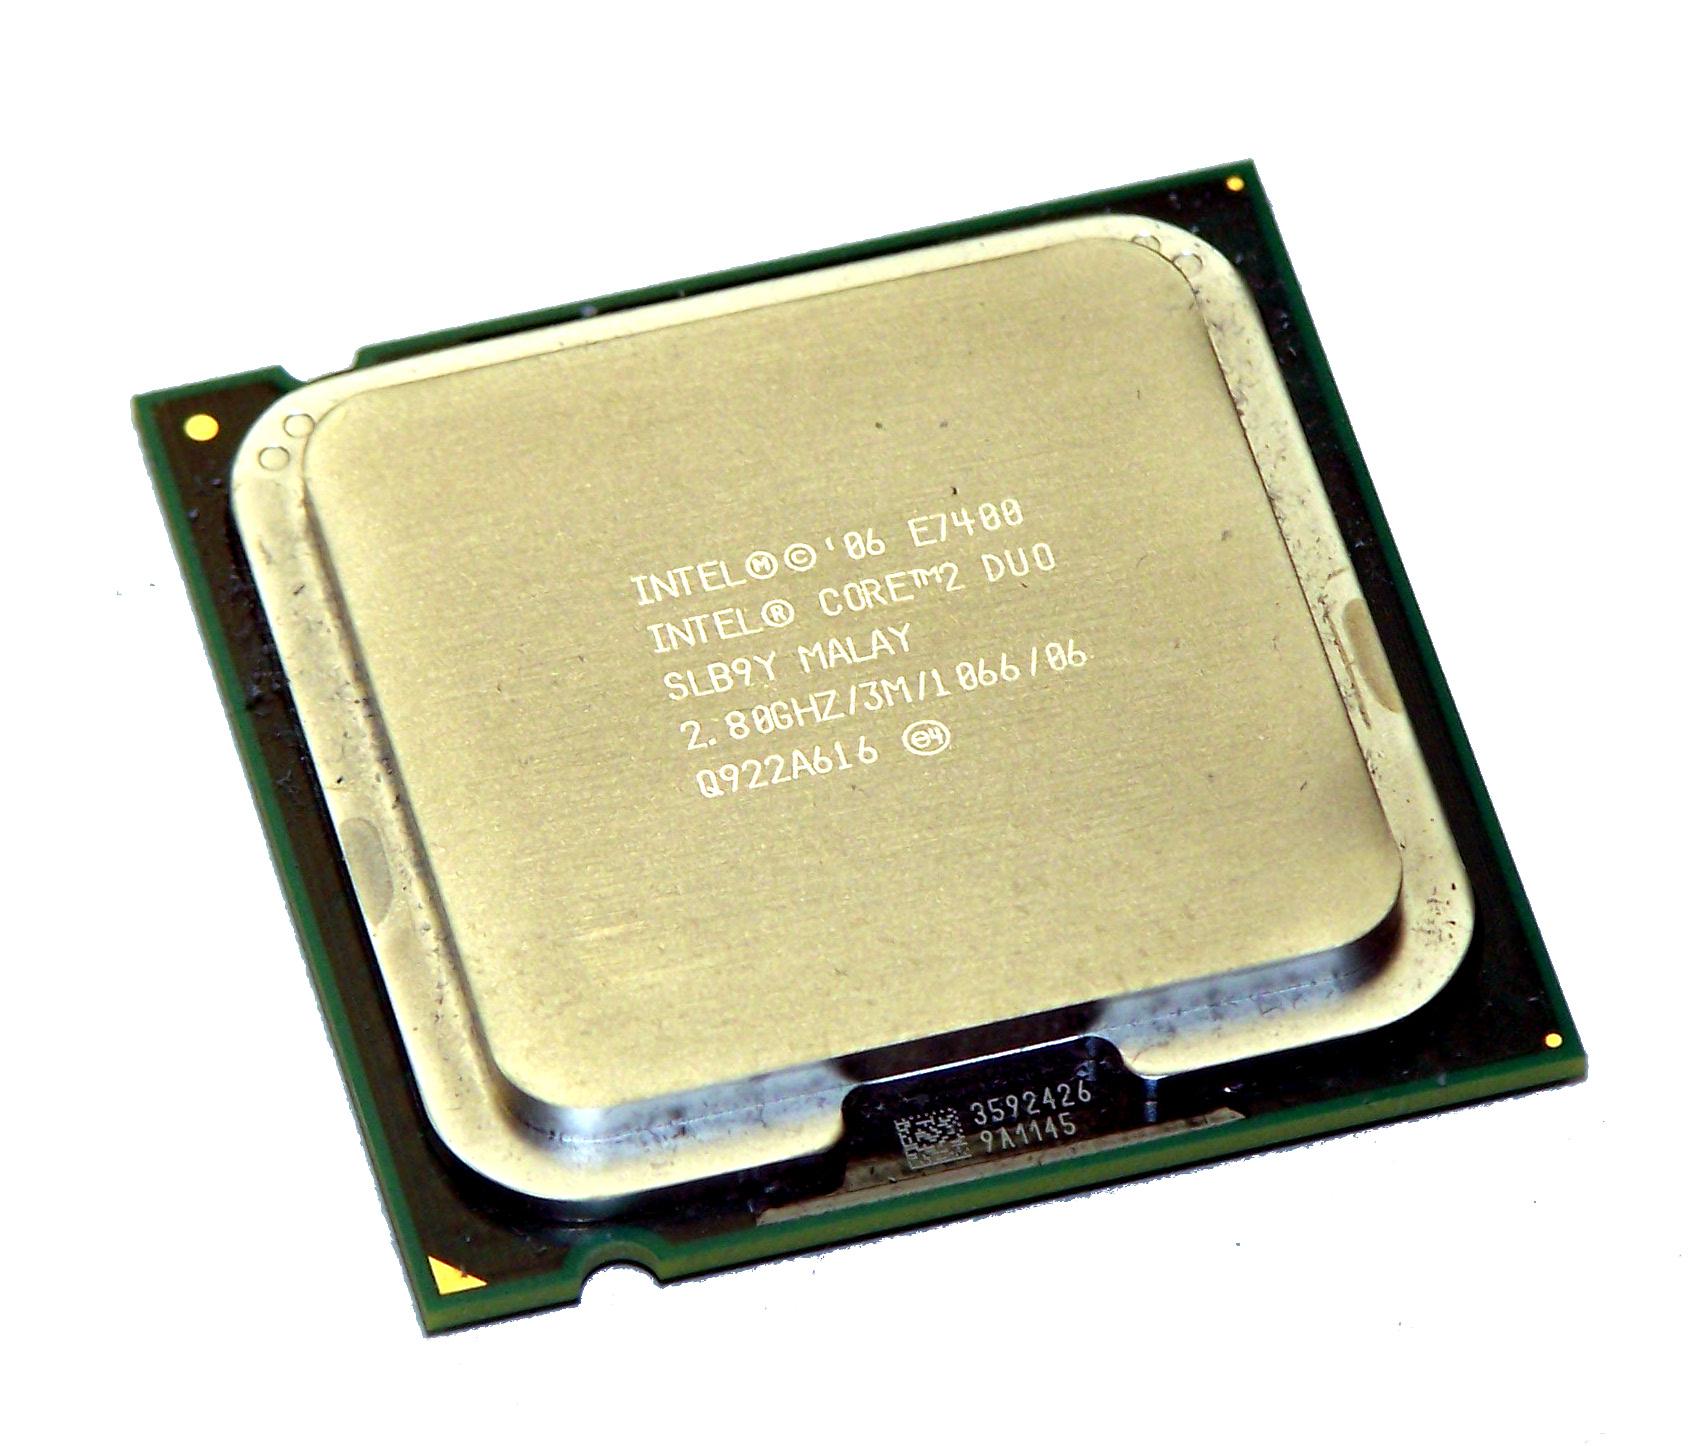 Intel core 2 duo оперативная память. Intel Core 2 Duo e7400. E7400 Core 2 Duo. Intel Core 2 Duo e9900. Intel Core 2 Duo e7400 lga775, 2 x 2800 МГЦ.